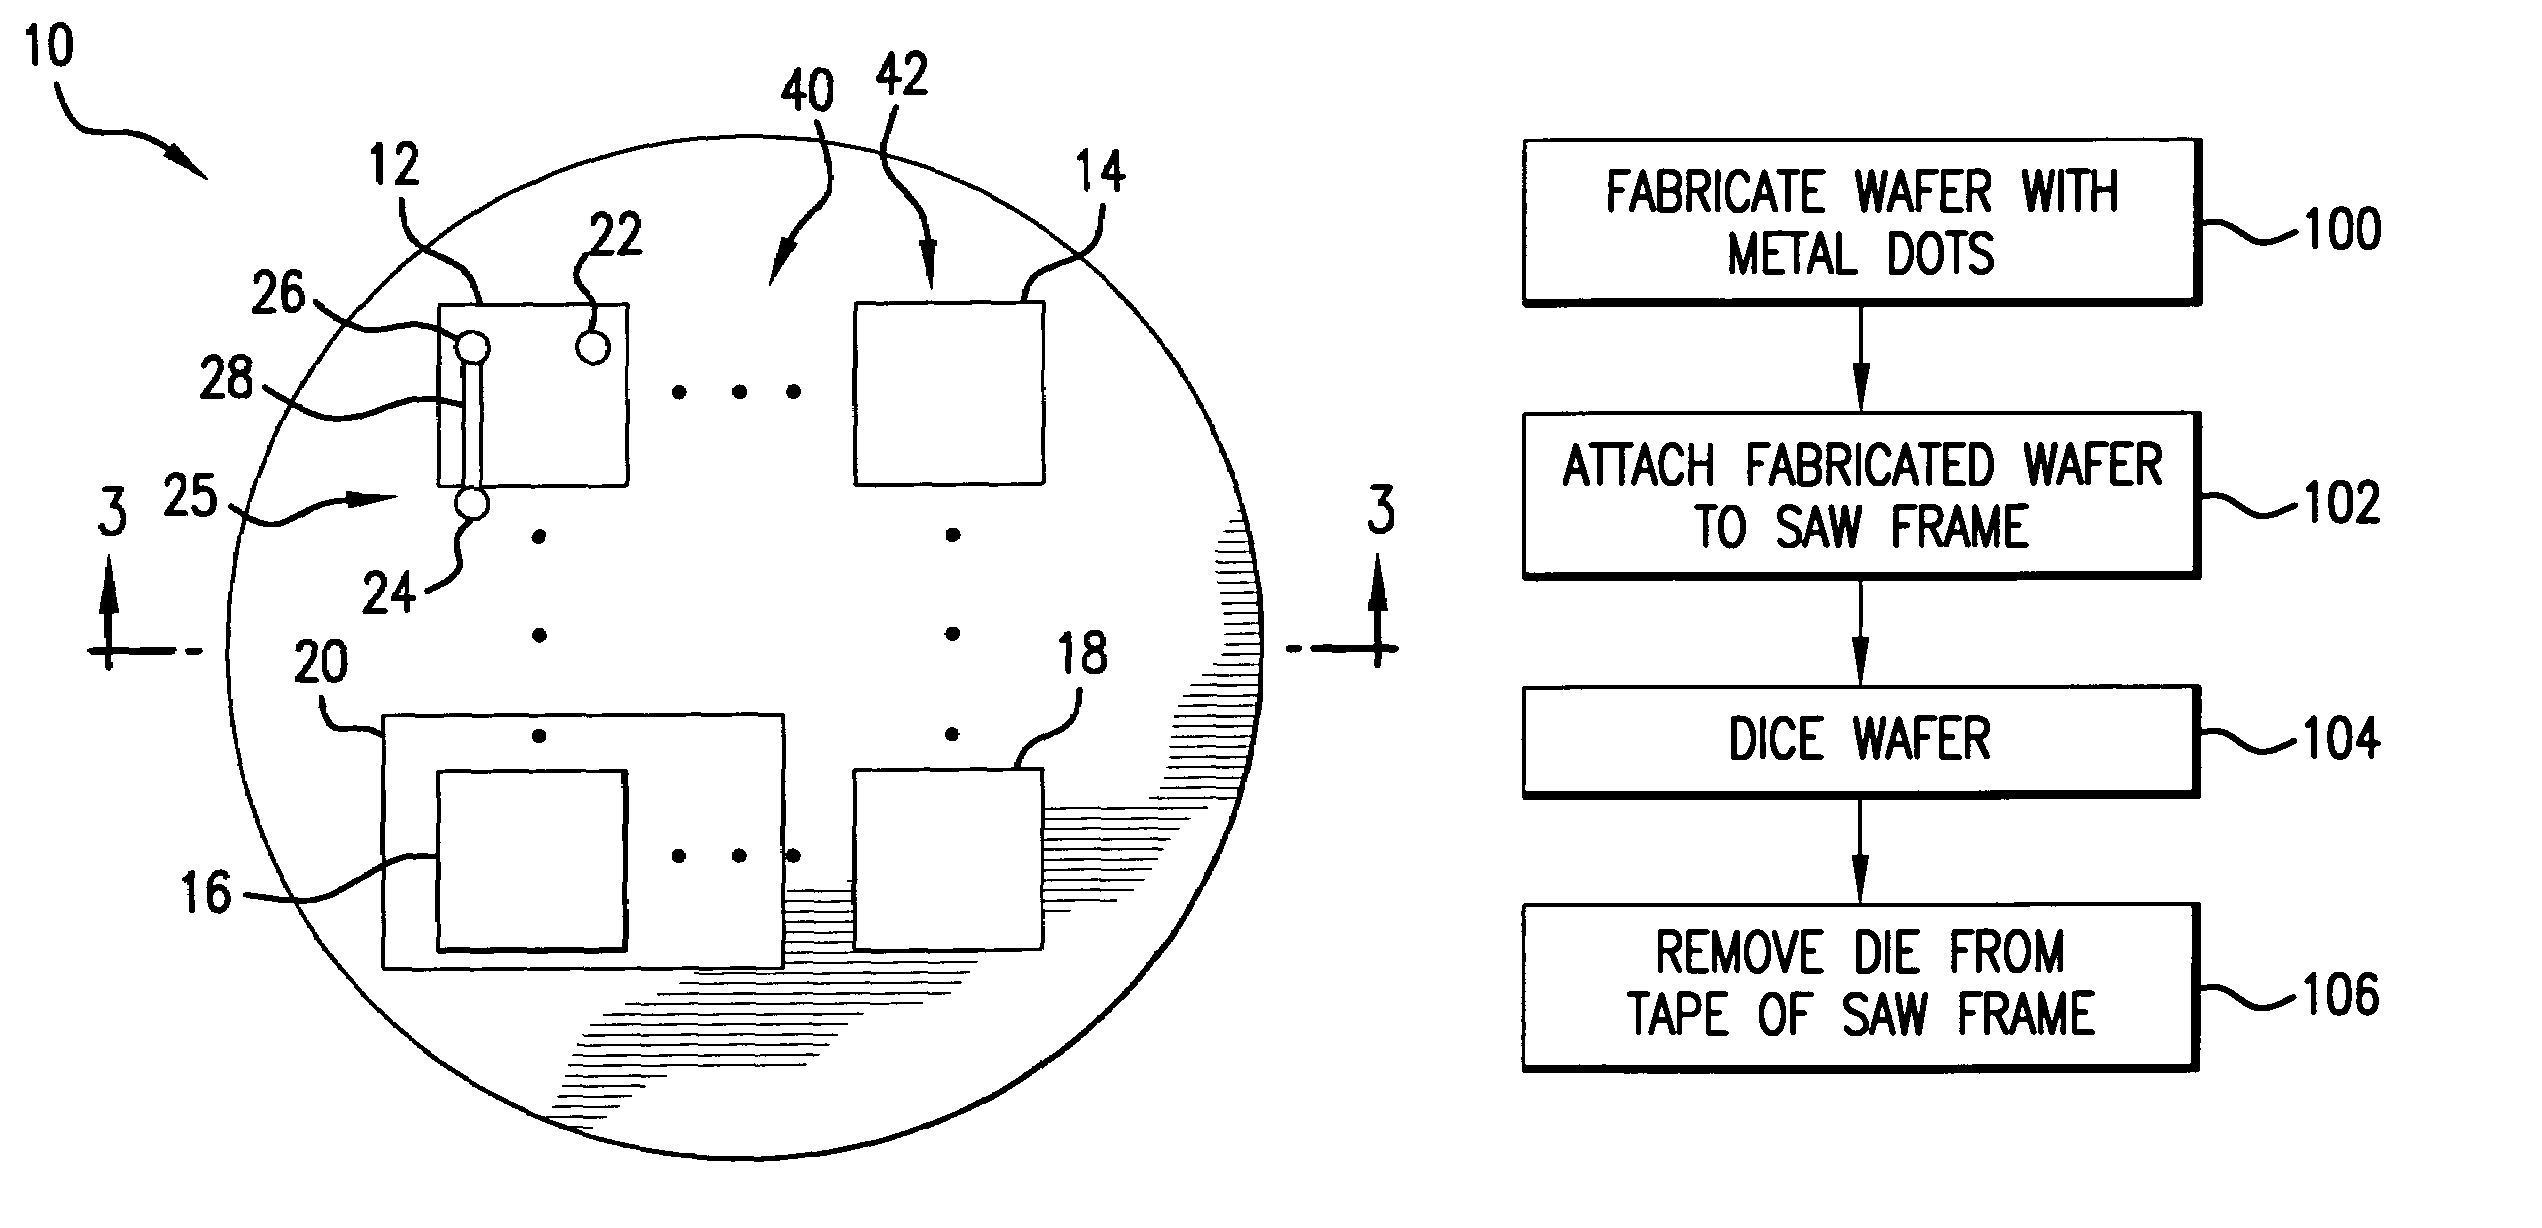 Method for eliminating backside metal peeling during die separation